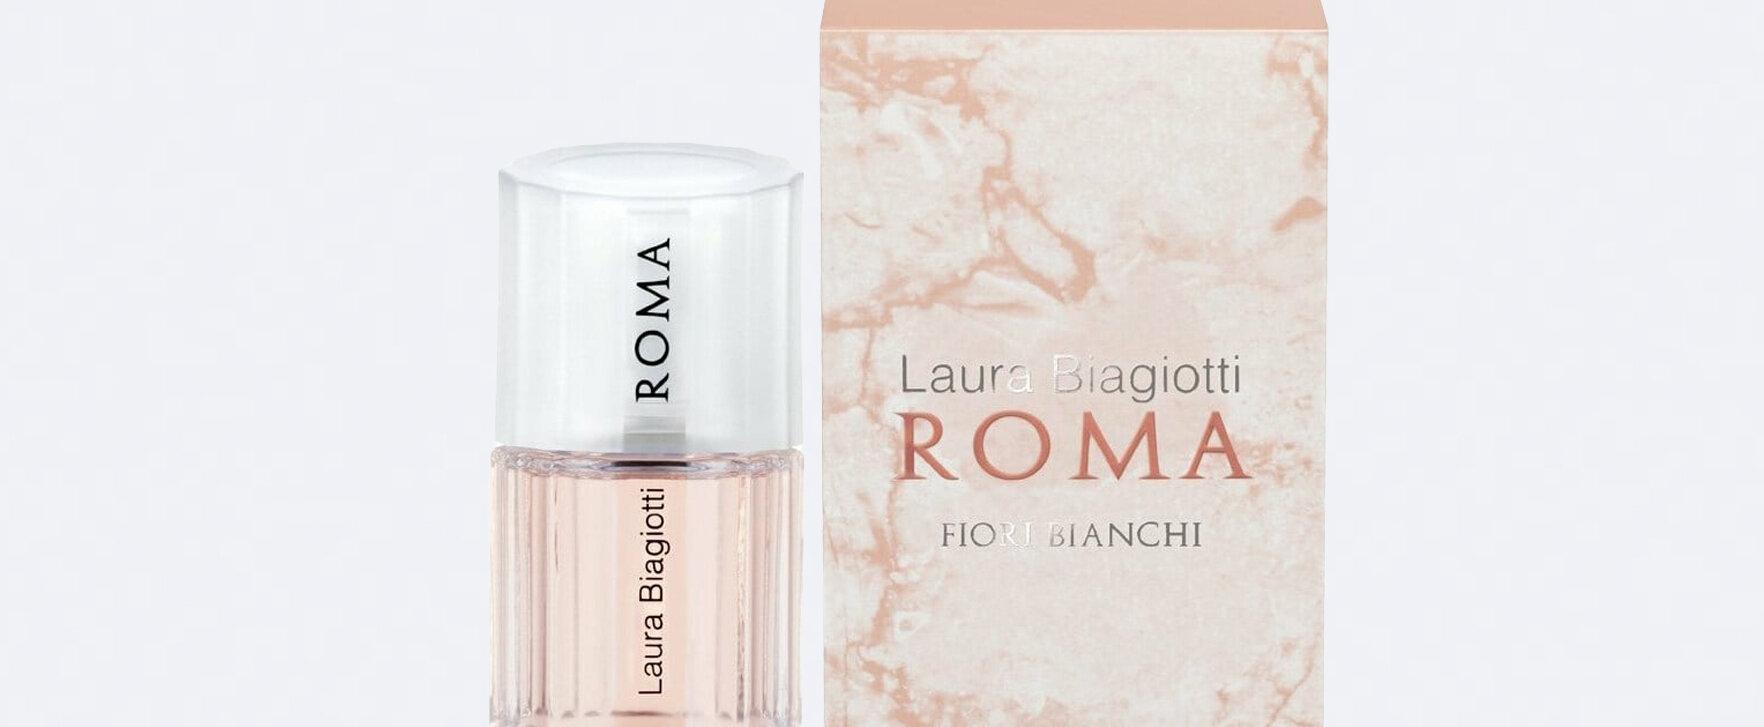 Eine Hommage an die Weiblichkeit und Rom: Der neue feminine Duft von Laura Biagiotti